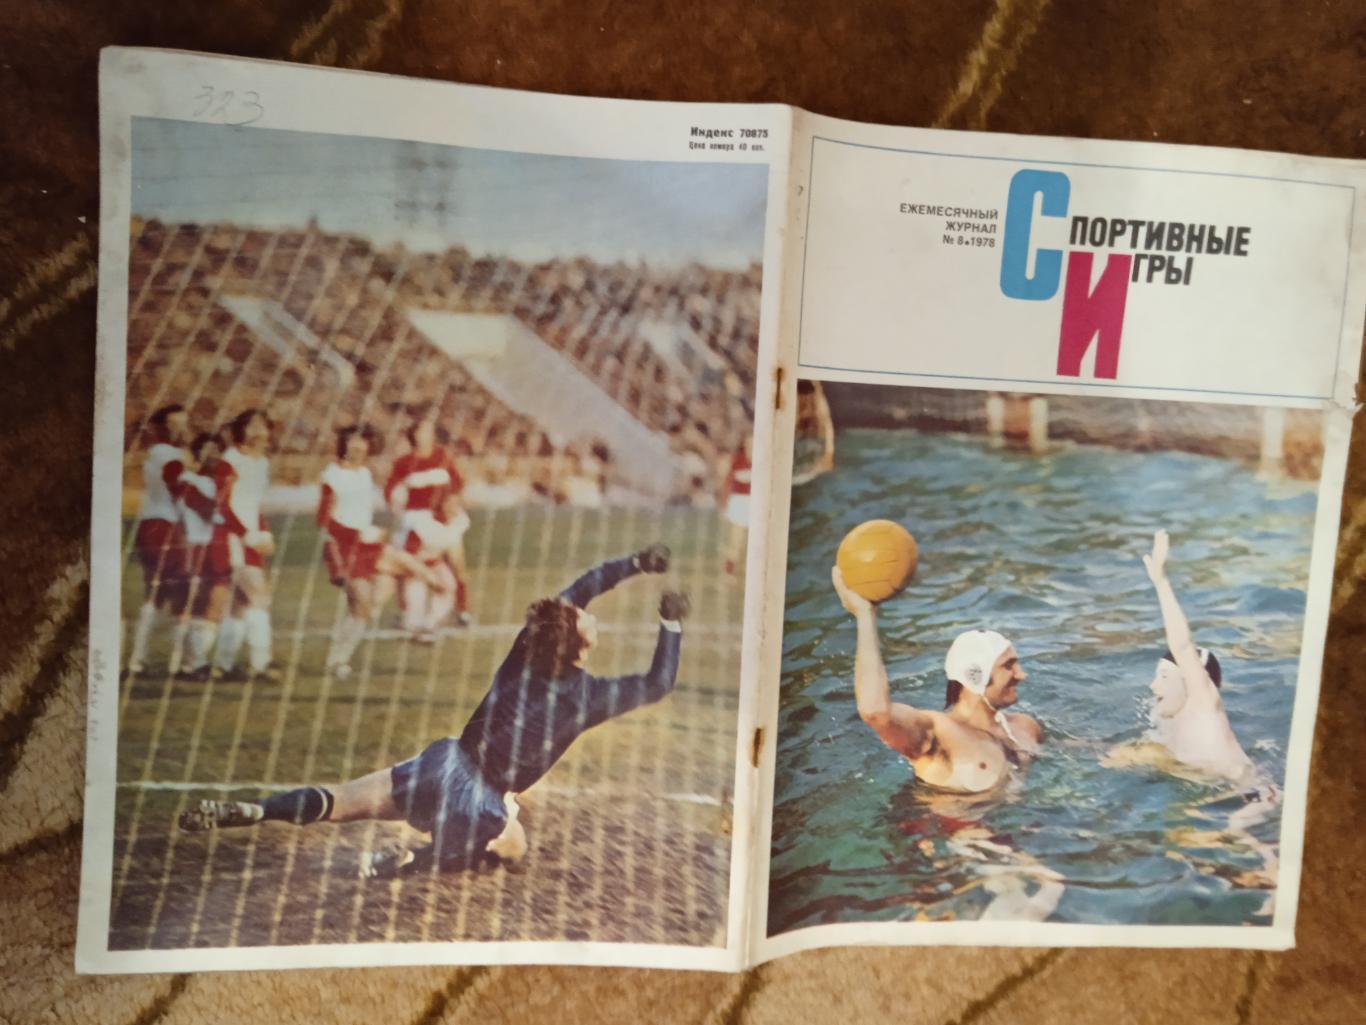 Журнал.Спортивные игры № 8 1978 г. Футбол,хоккей,волейбол,регби.ЧМ 78.Аргентина.